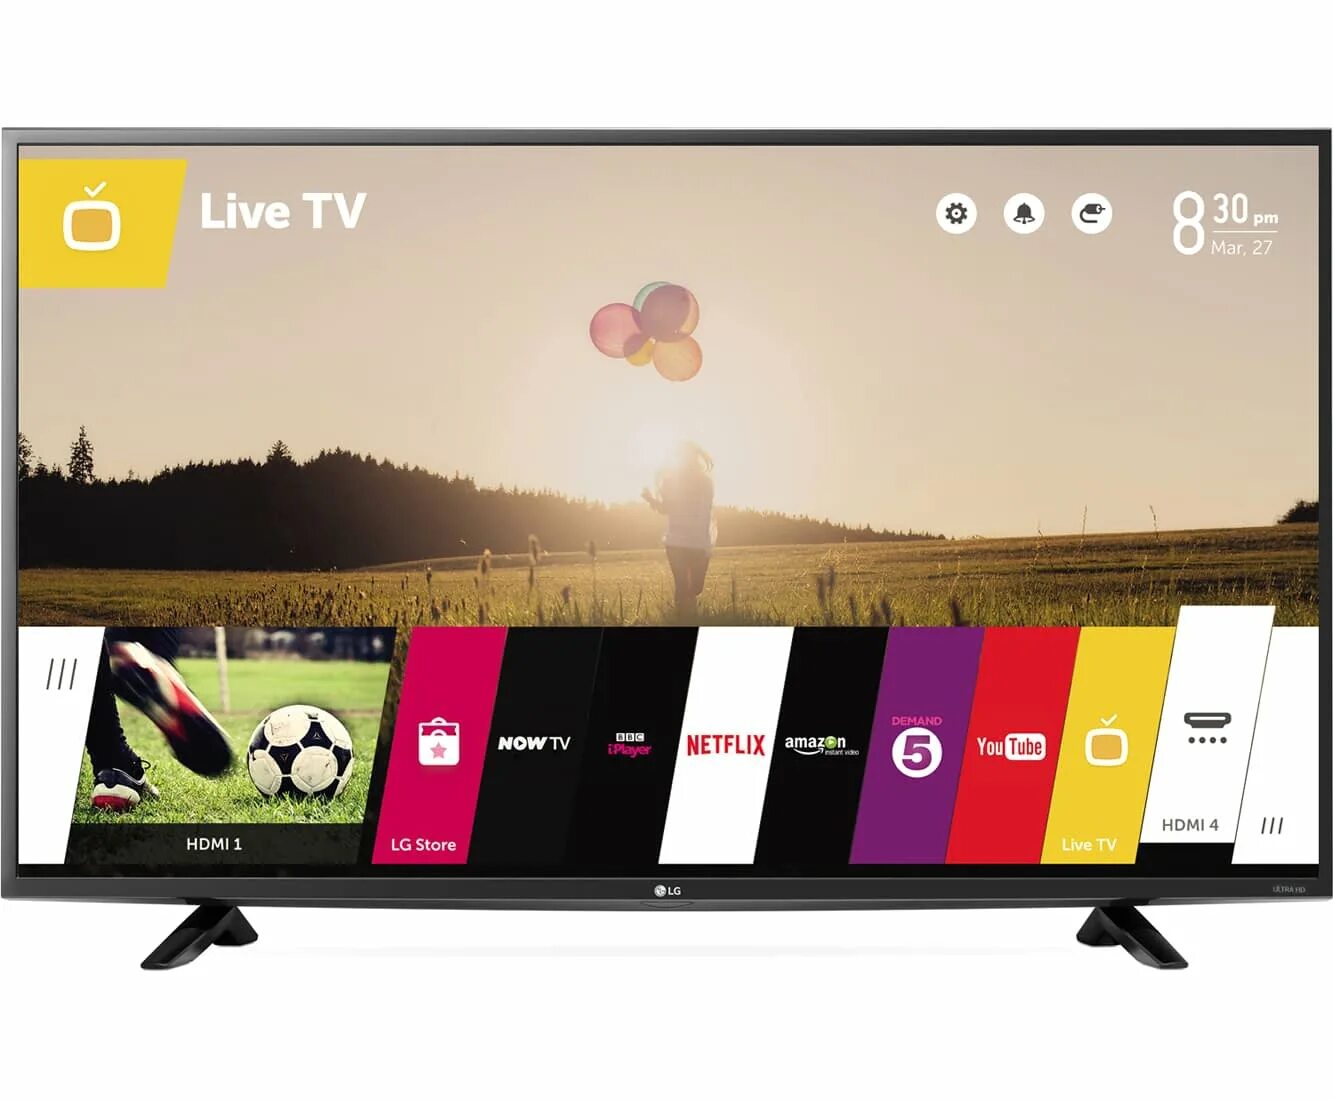 Телевизор LG 49lf630v 49" (2015). LG 43uf640v. Телевизор LG 43lf630v 43" (2015). WEBOS телевизор LG 32. Рейтинг телевизоров lg